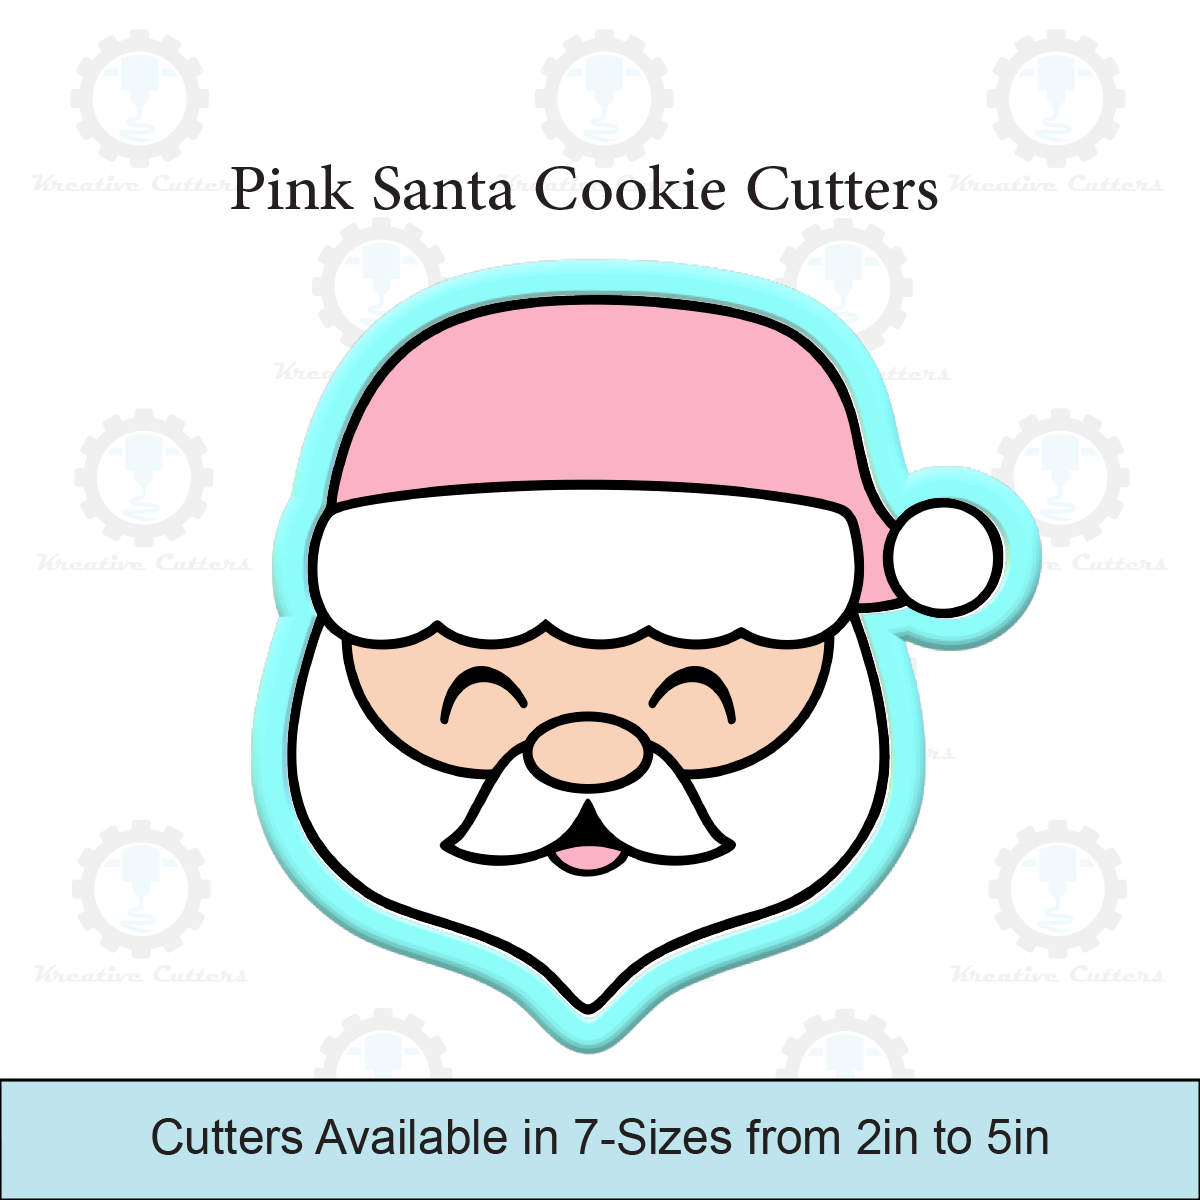 Pink Santa Cookie Cutters